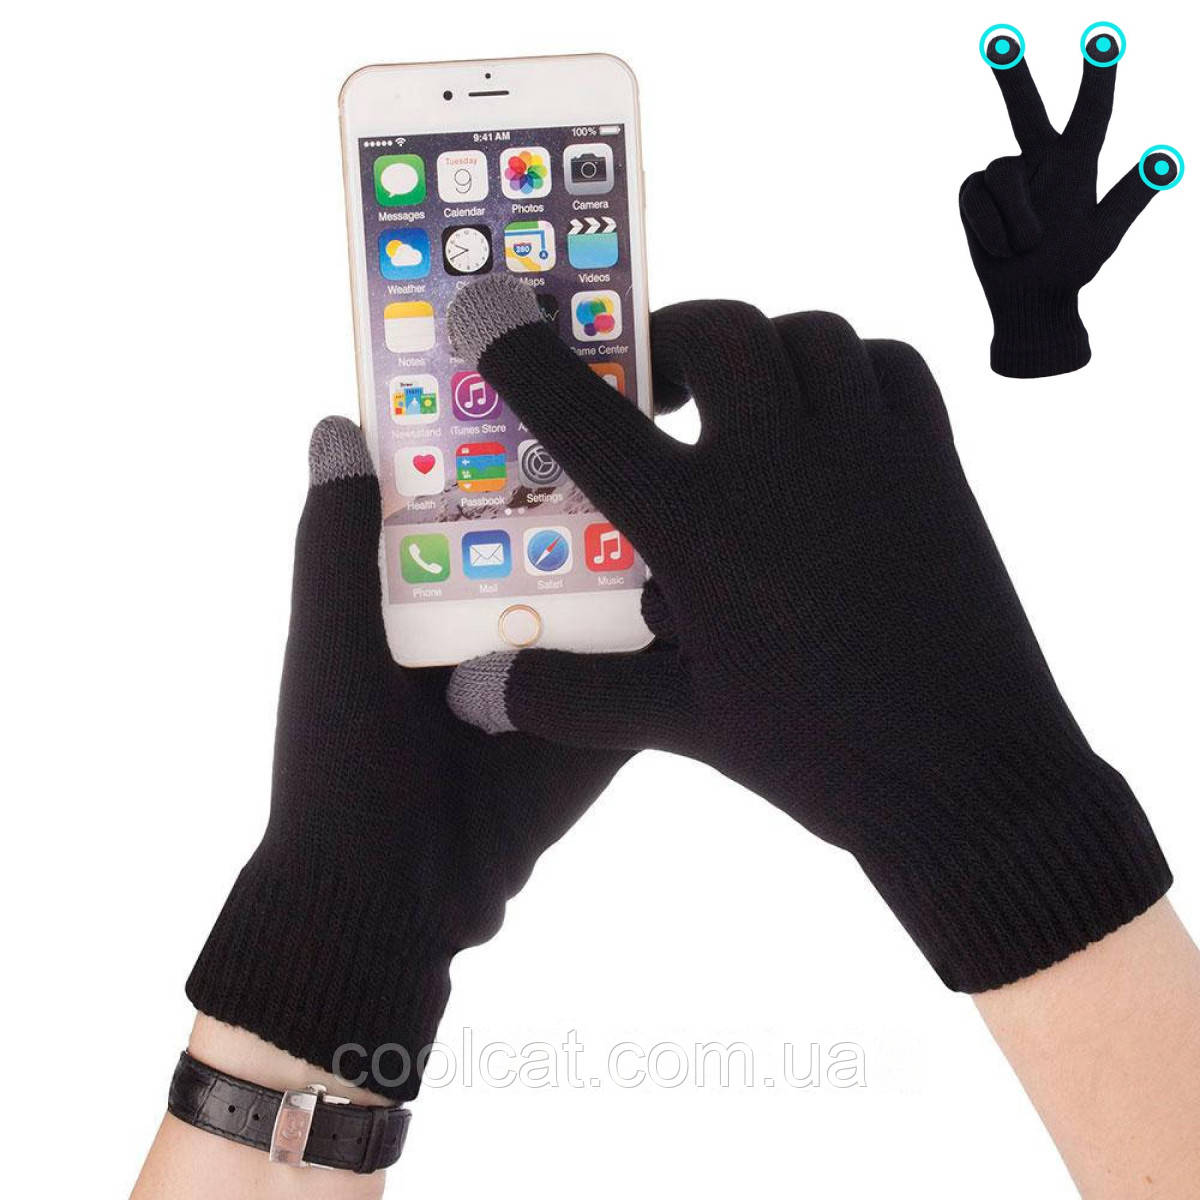 Рукавички для сенсорних екранів / Сенсорні рукавиці / Рукавички для телефону з функцією тачскрин